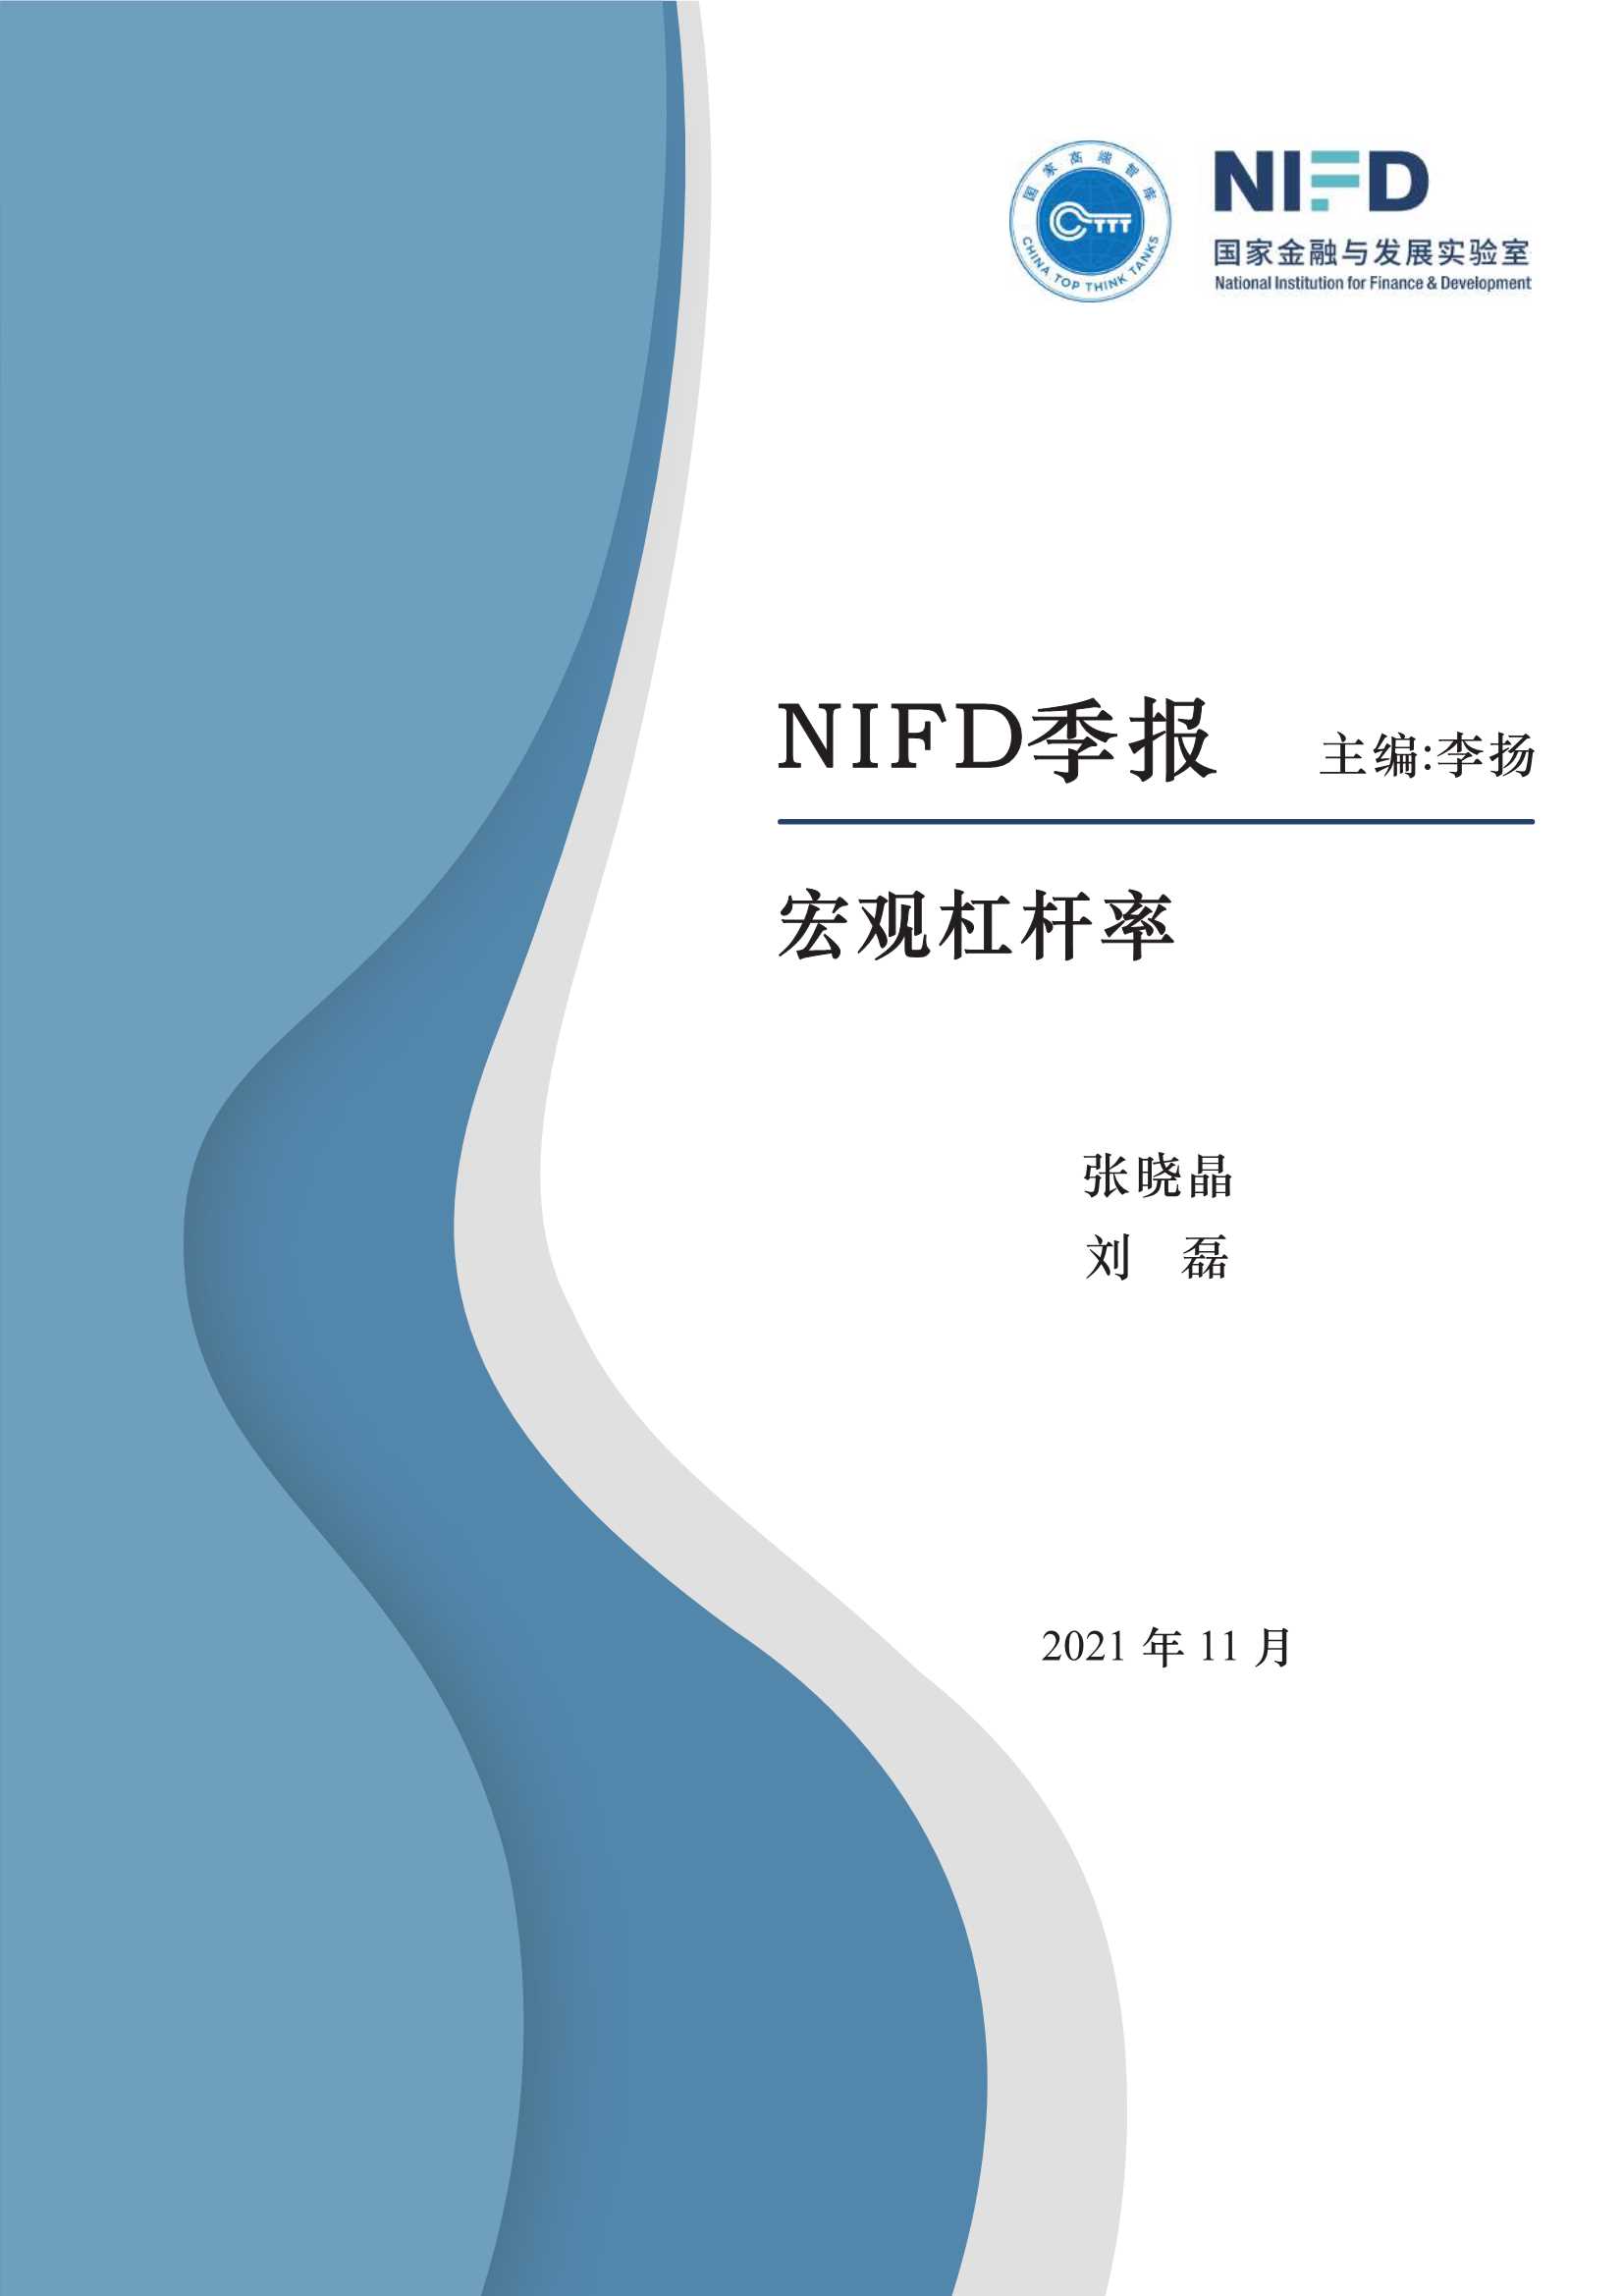 NIFD-2021Q3宏观杠杆率-2021.11-27页